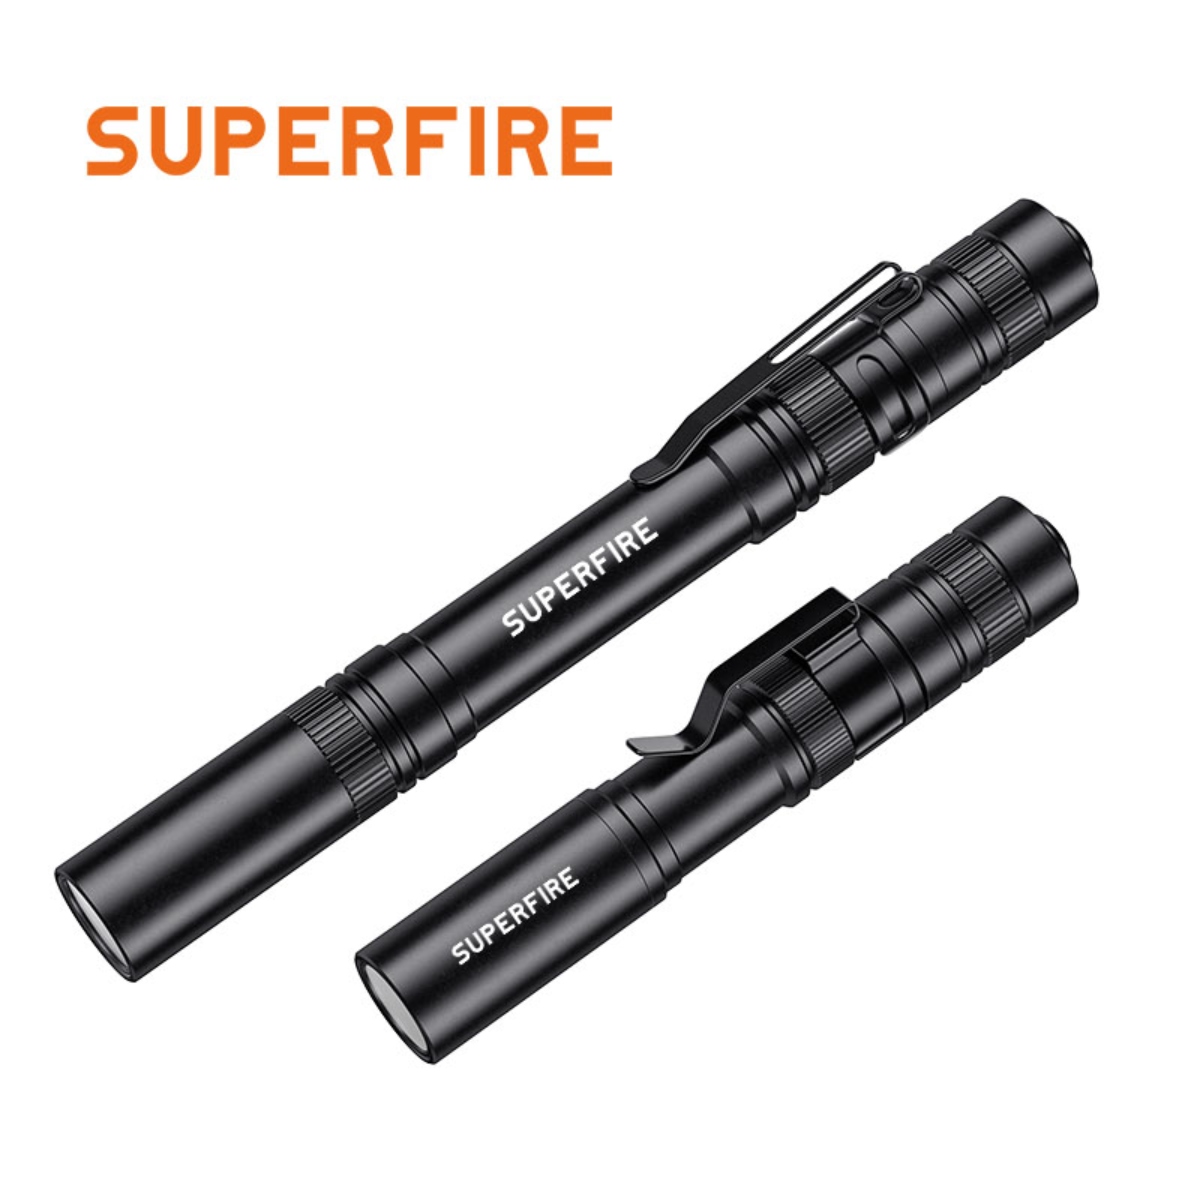 SUPERFIRE L28/X18 pen flashlights